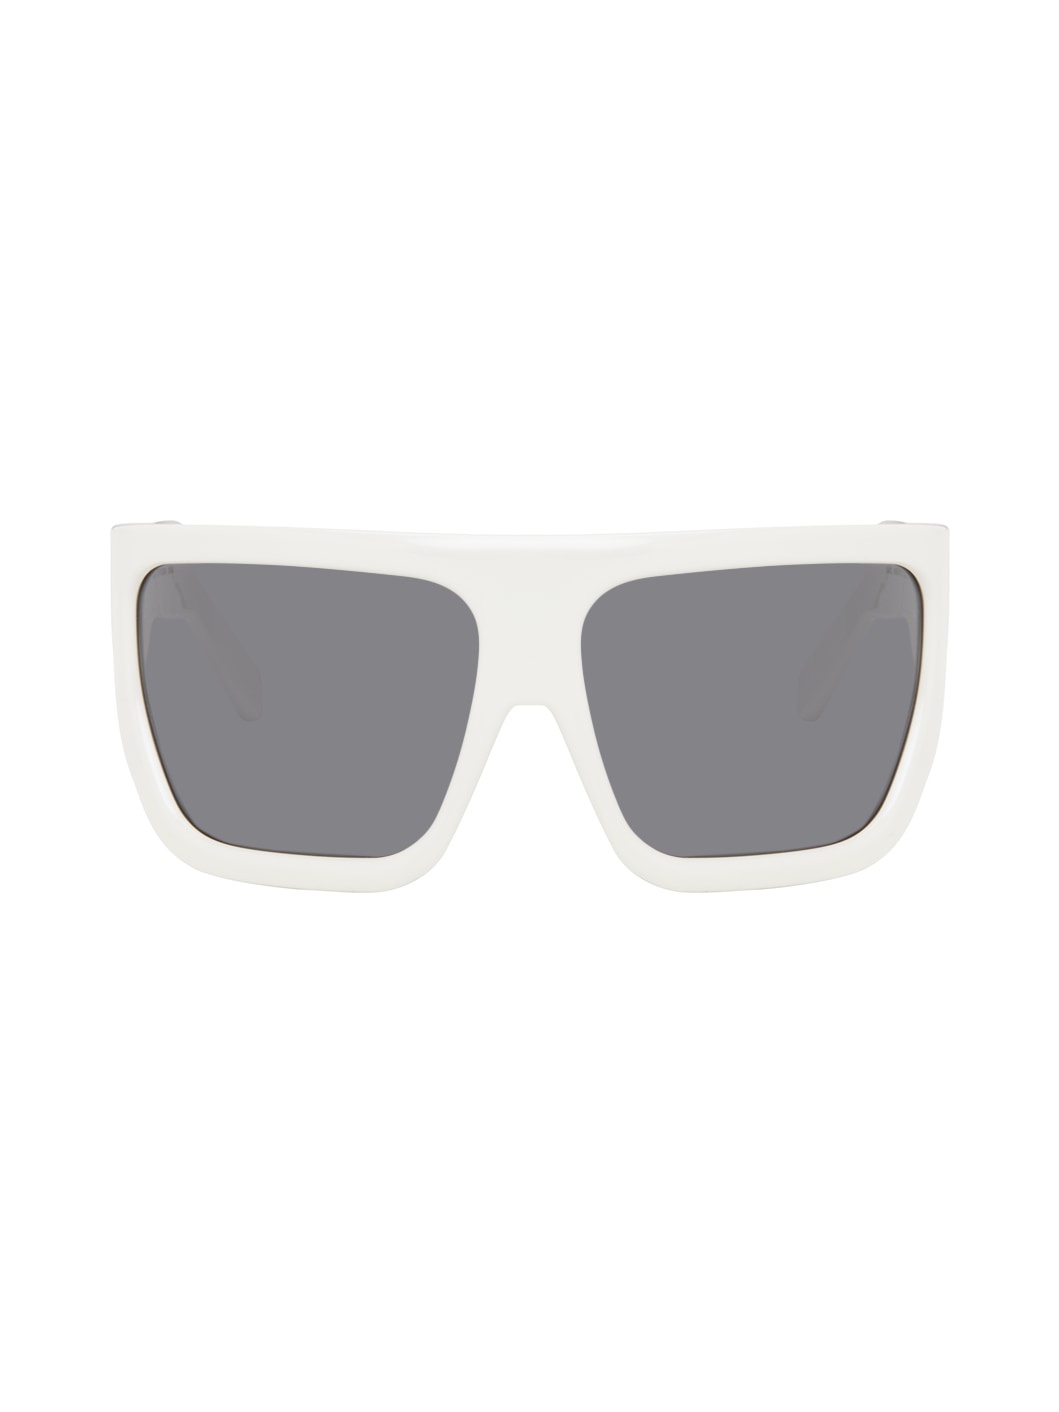 Off-White Davis Sunglasses - 1